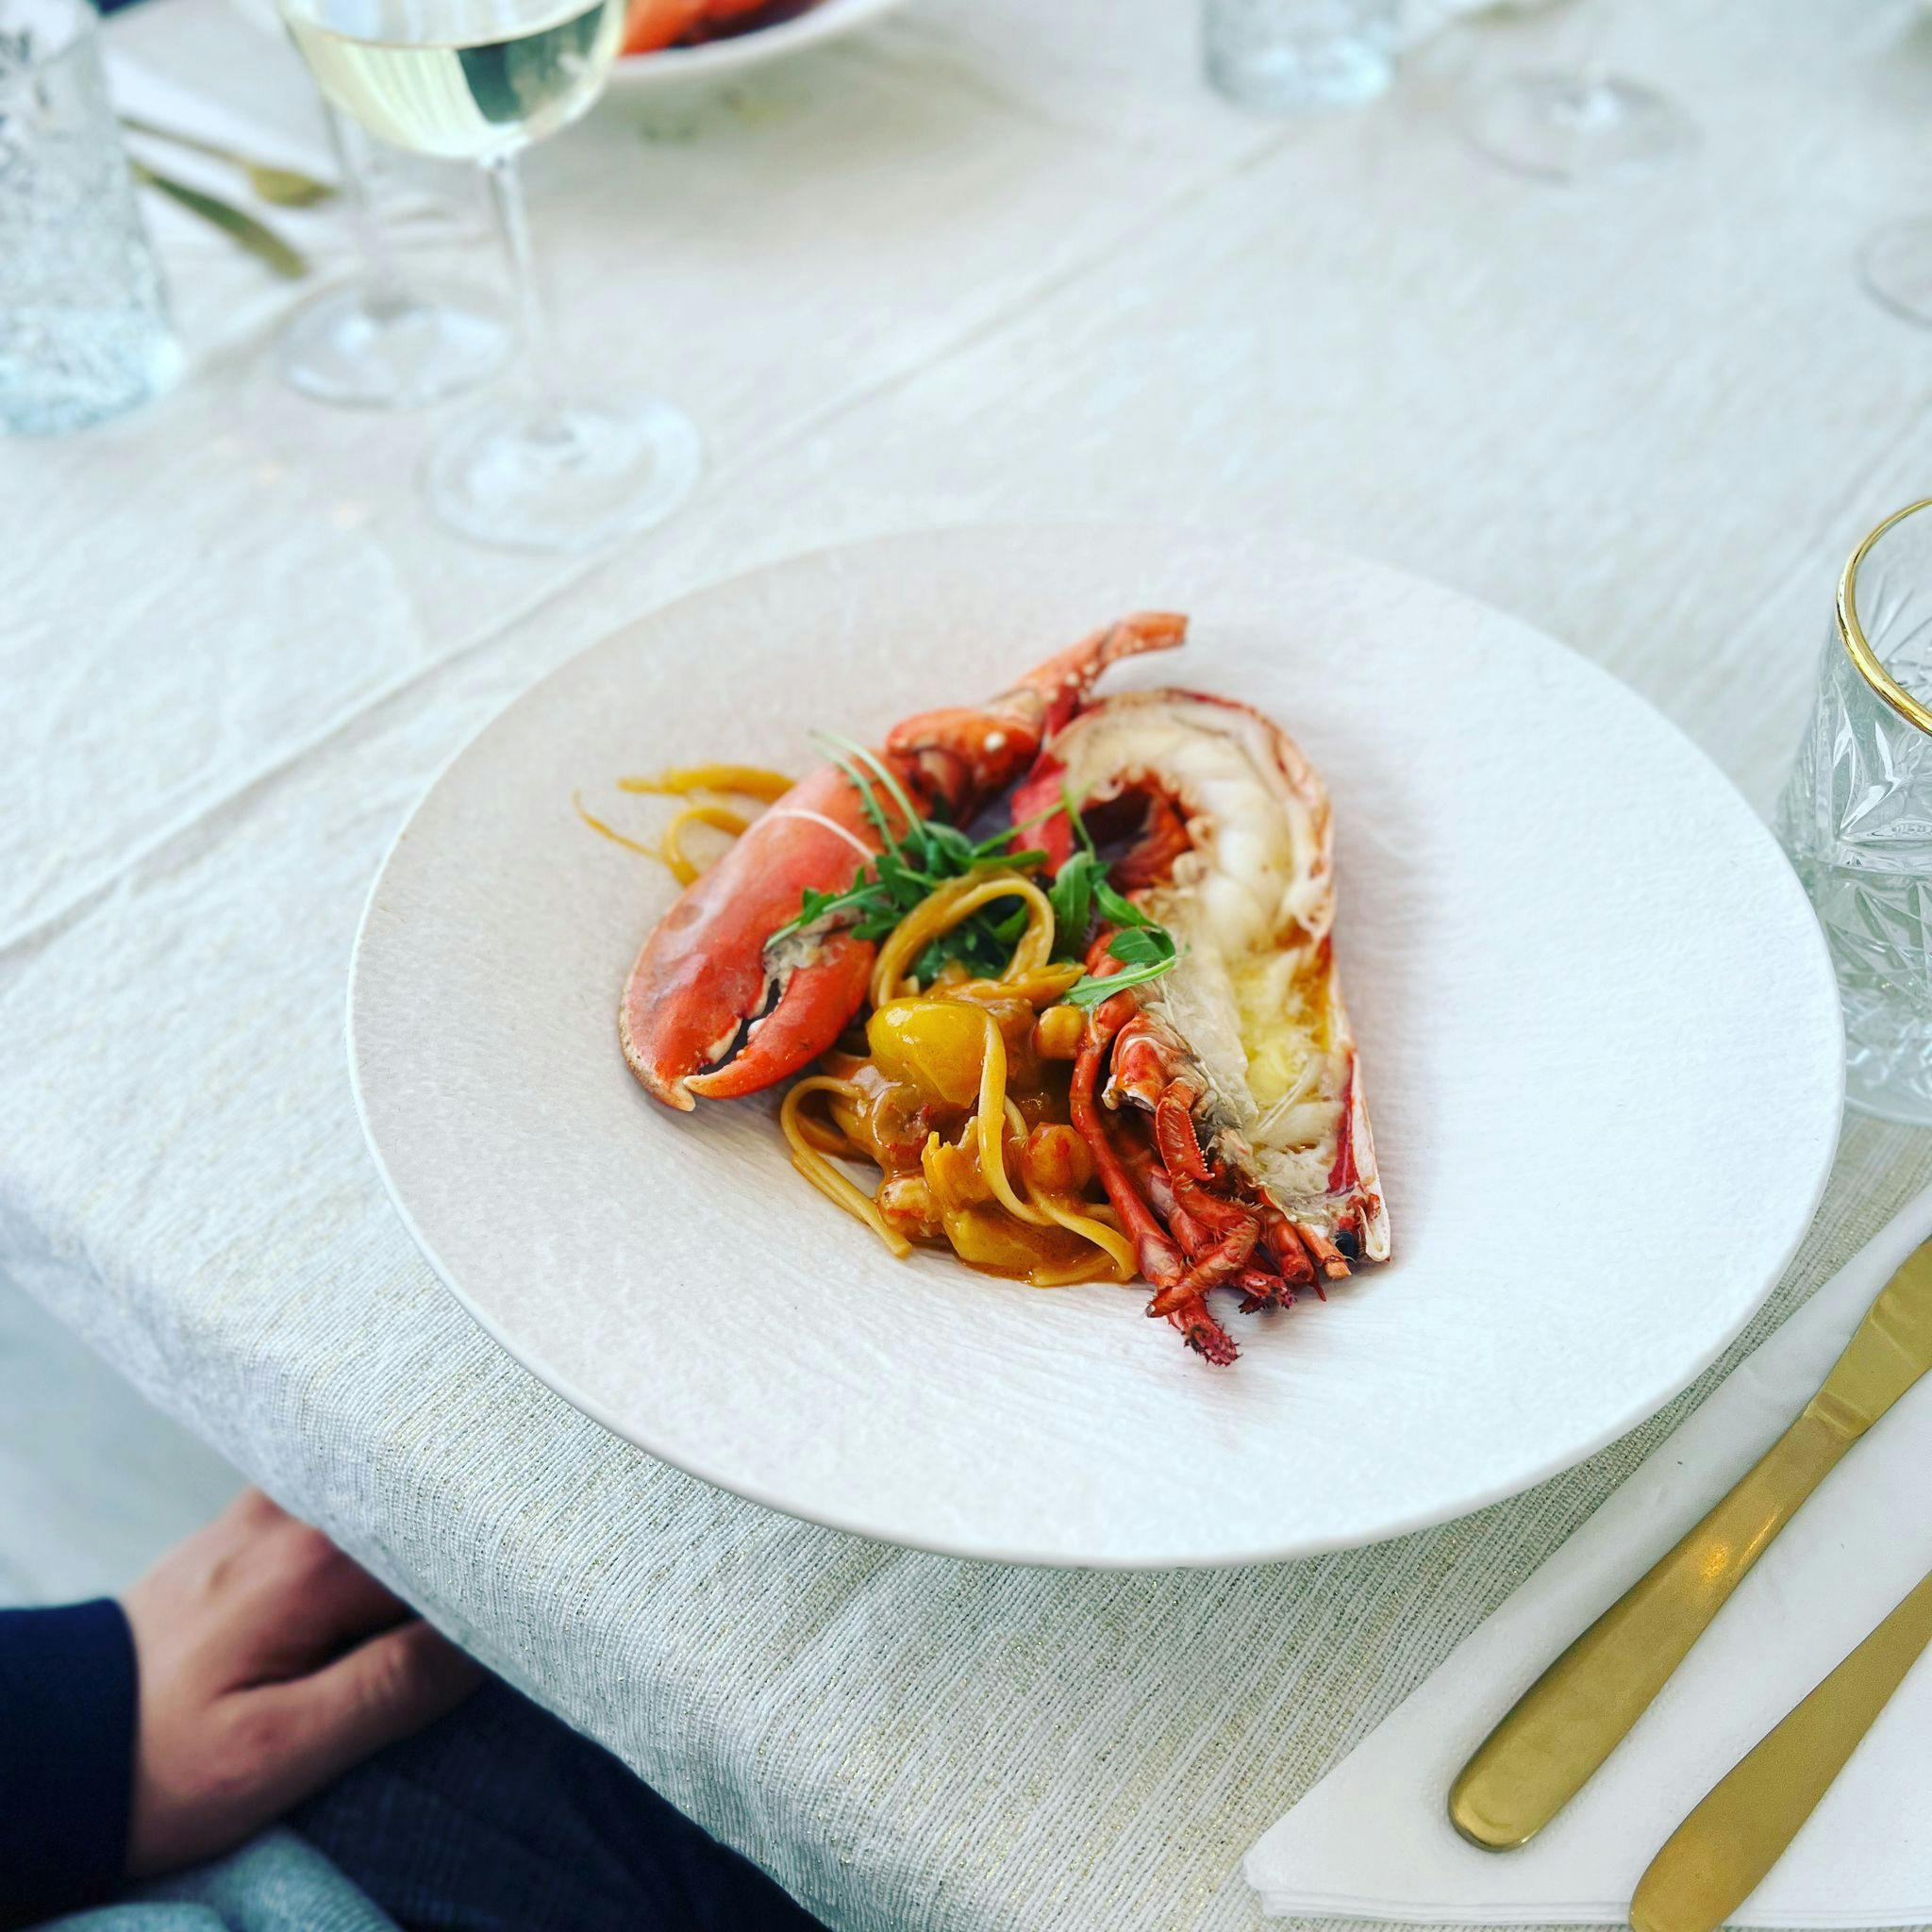 Chef Terenzio Ignoni, makes your dream private dining come true!